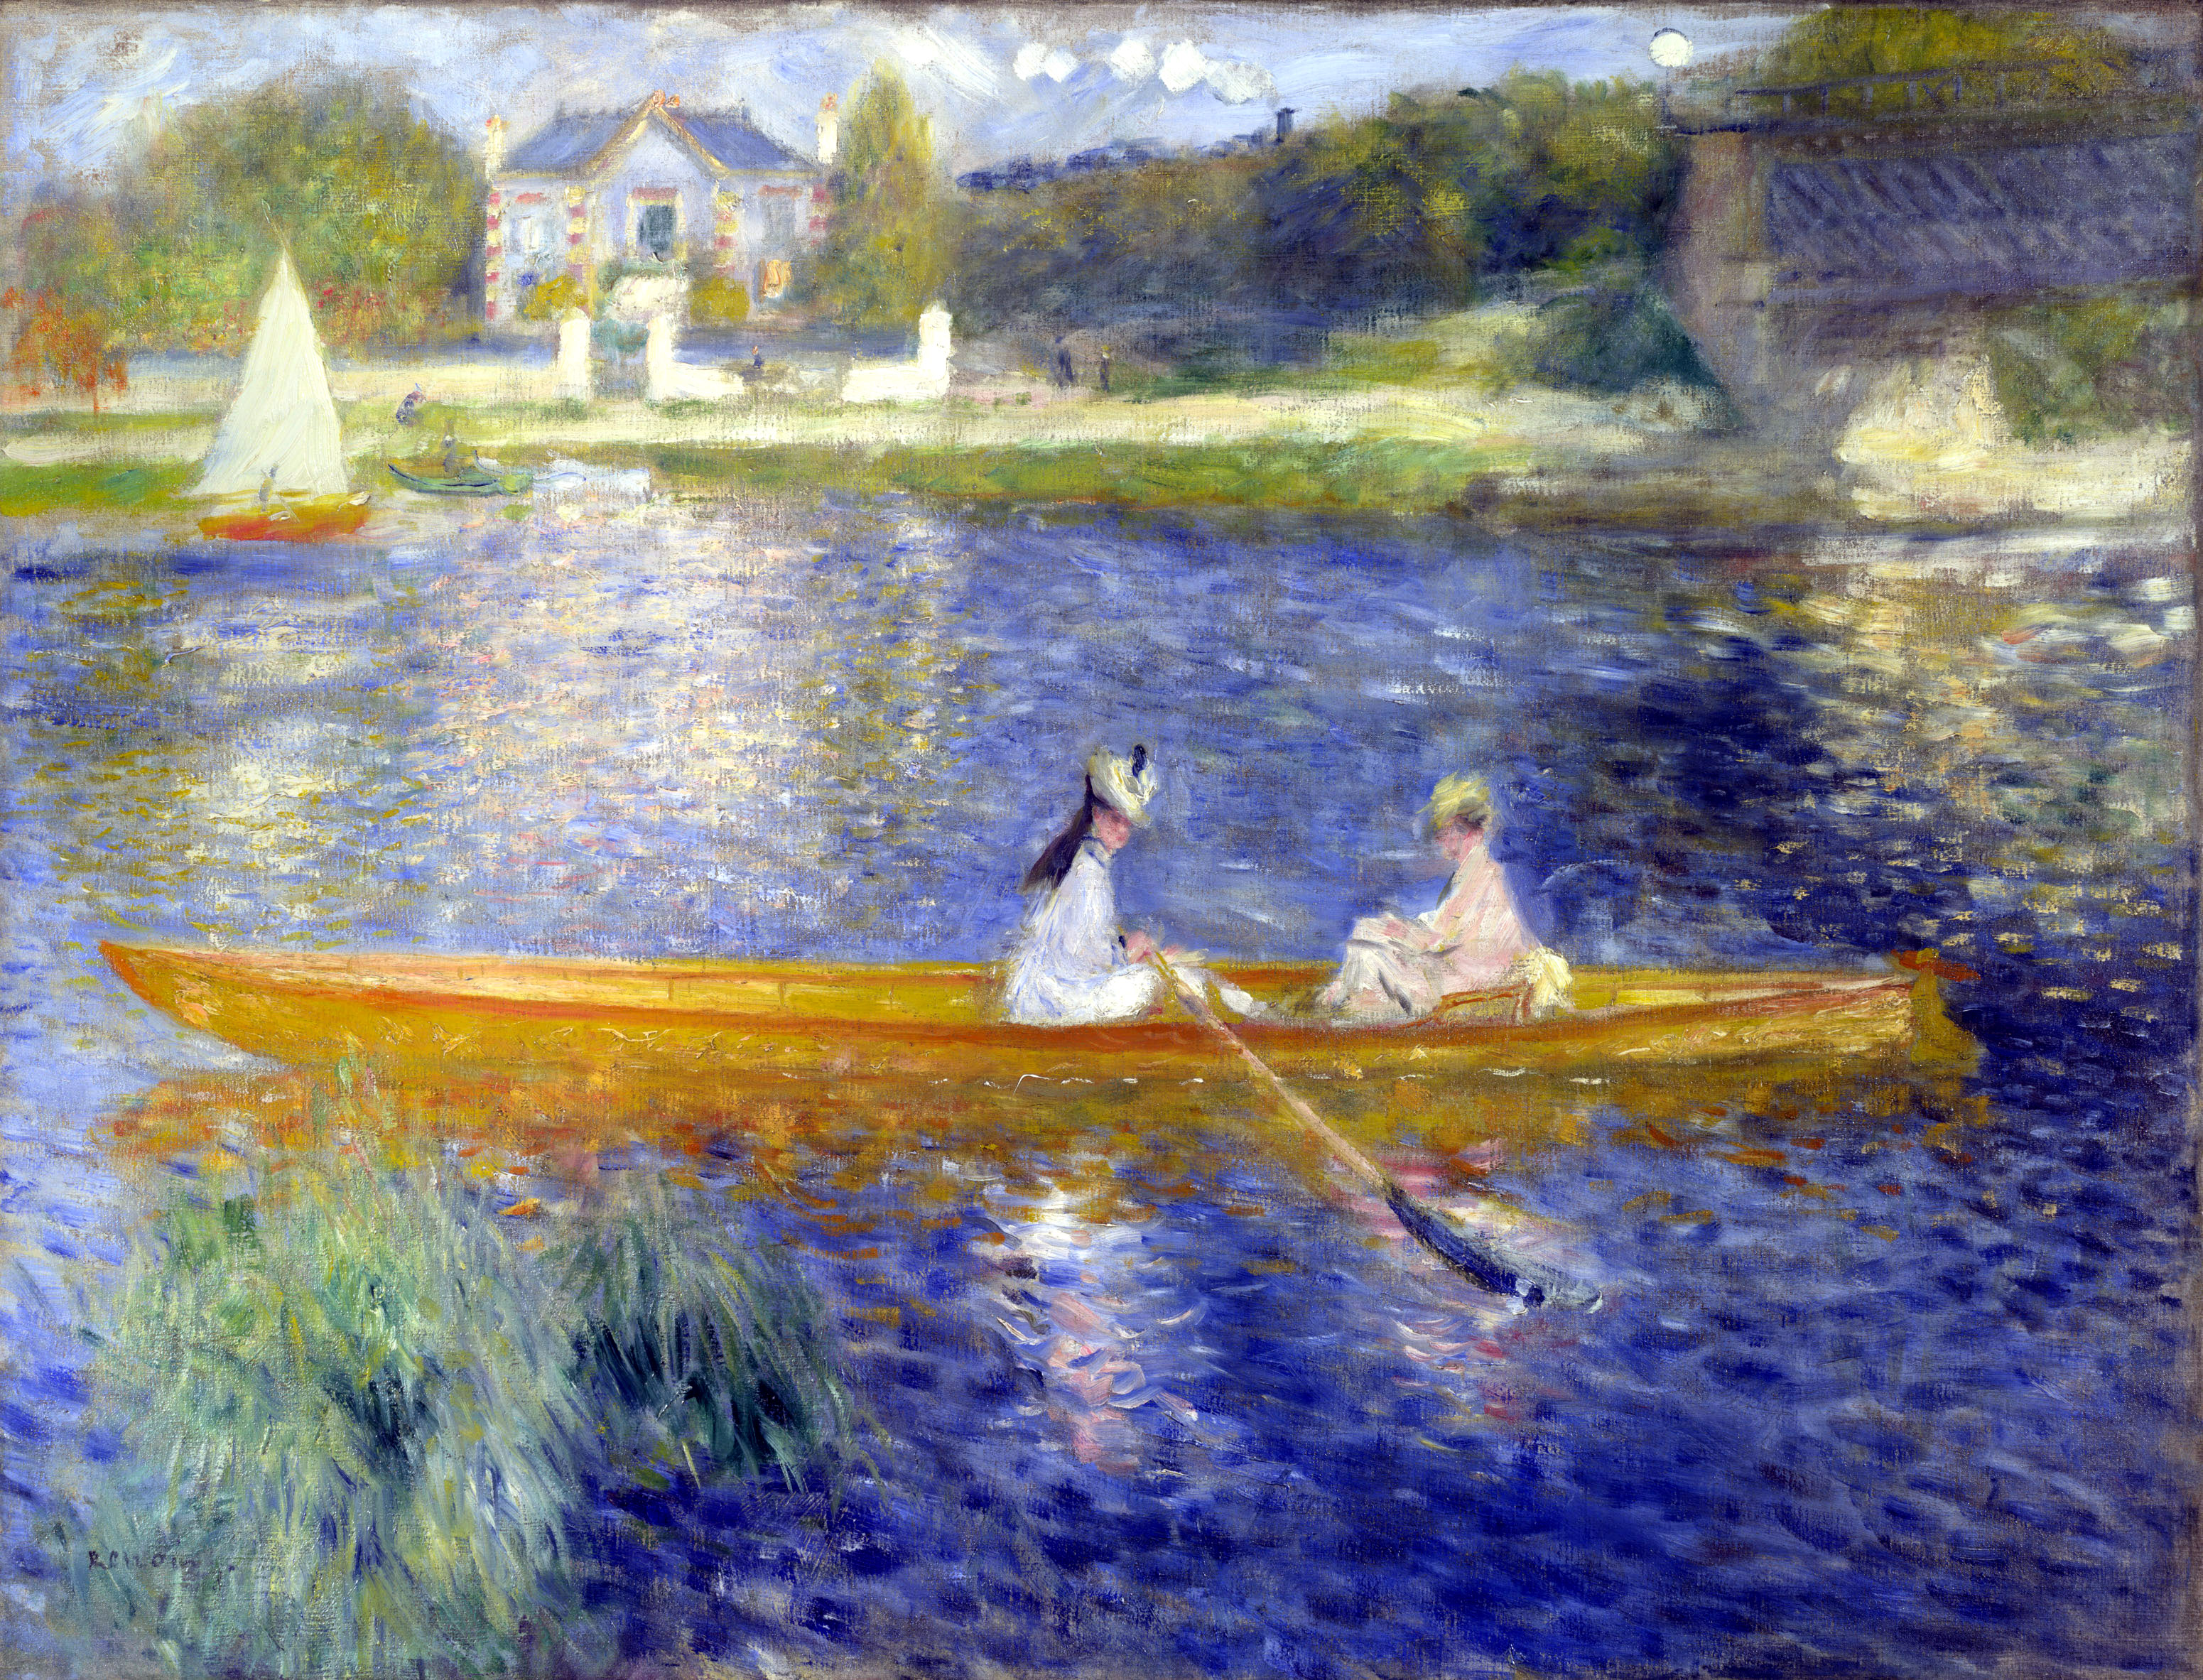 Das Ruderboot by Pierre-Auguste Renoir - 1875 - 71 cm x 92 cm National Gallery